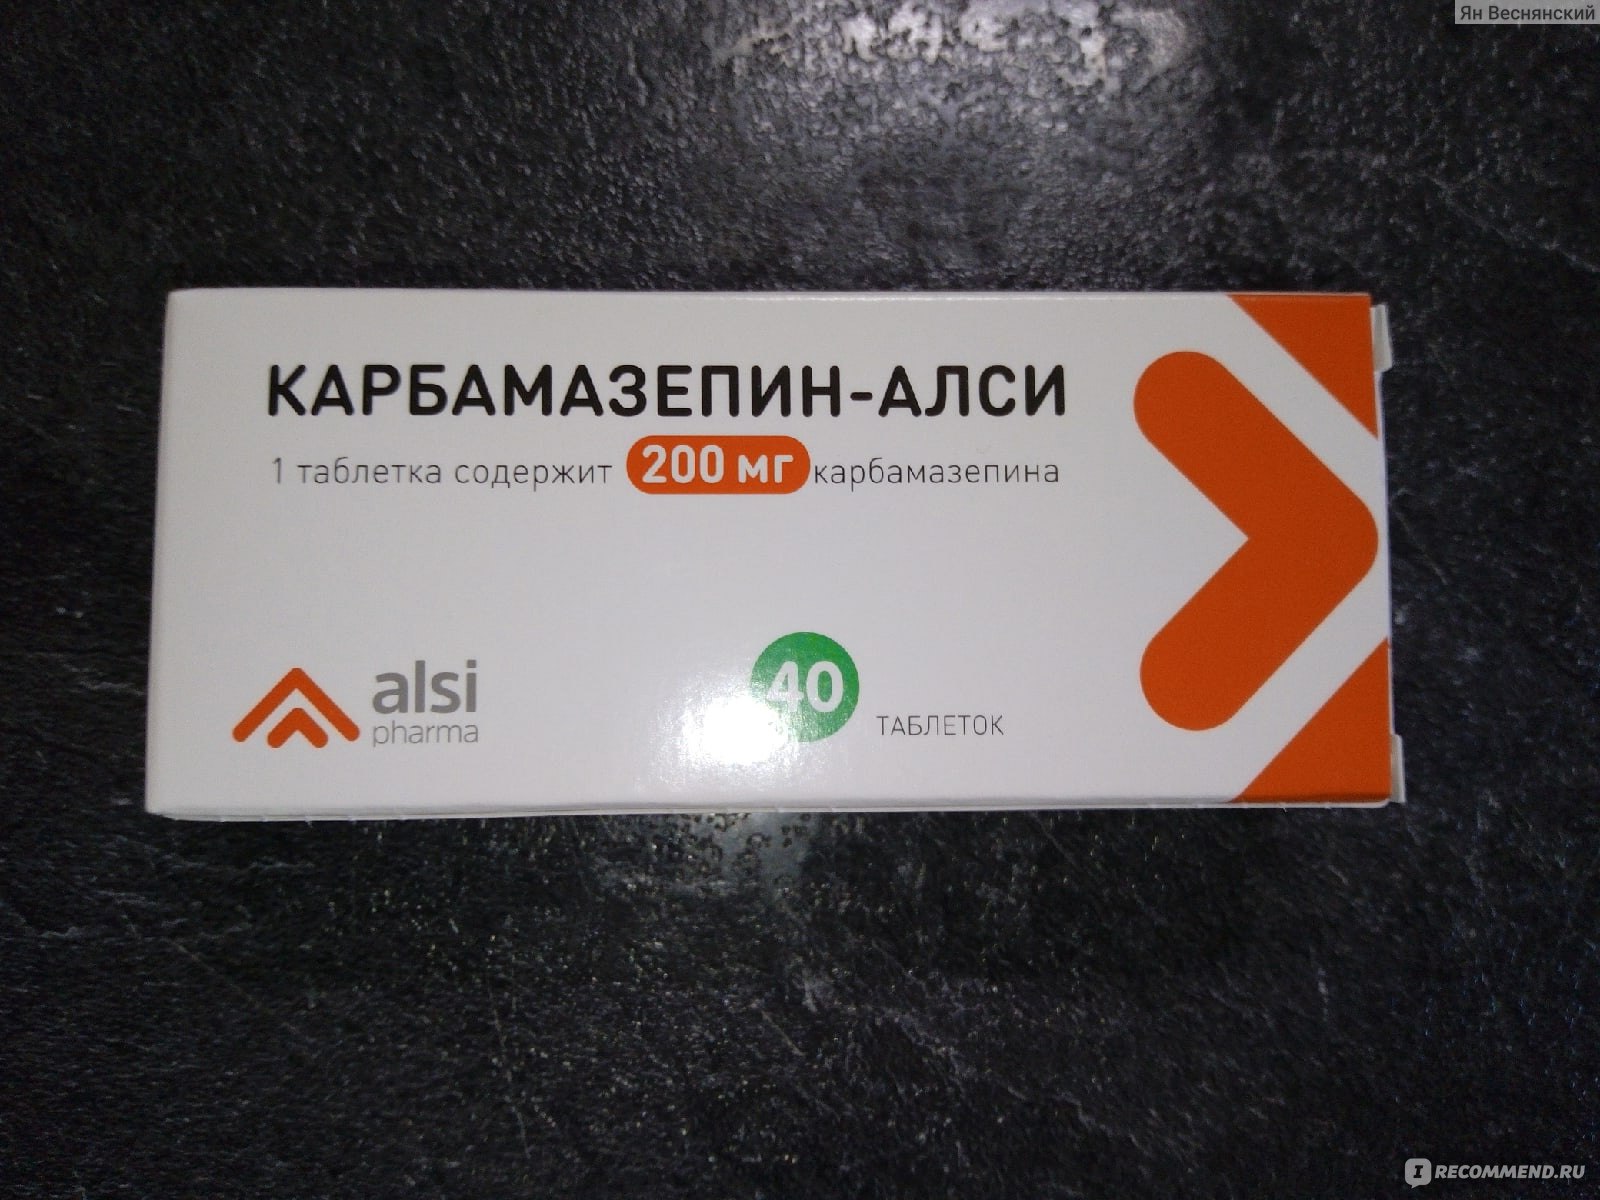 Таблетки Алси фарма Карбамазепин-Алси - «Помогают от тяги к алкоголю .